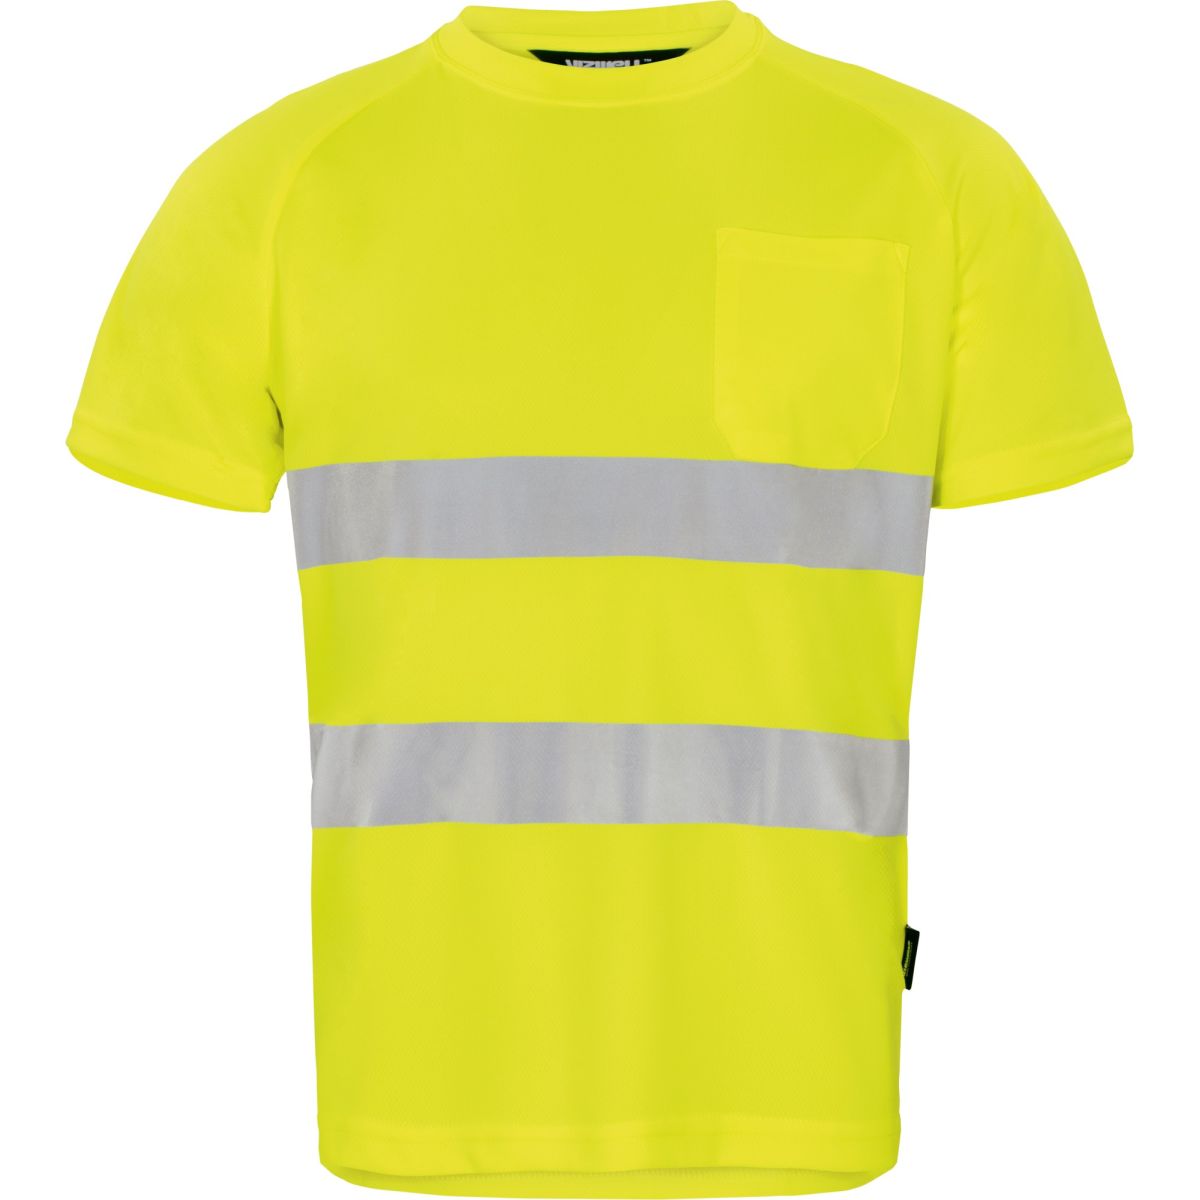 Warnschutz T-shirt leuchtgelb in Gr. M von Vizwell